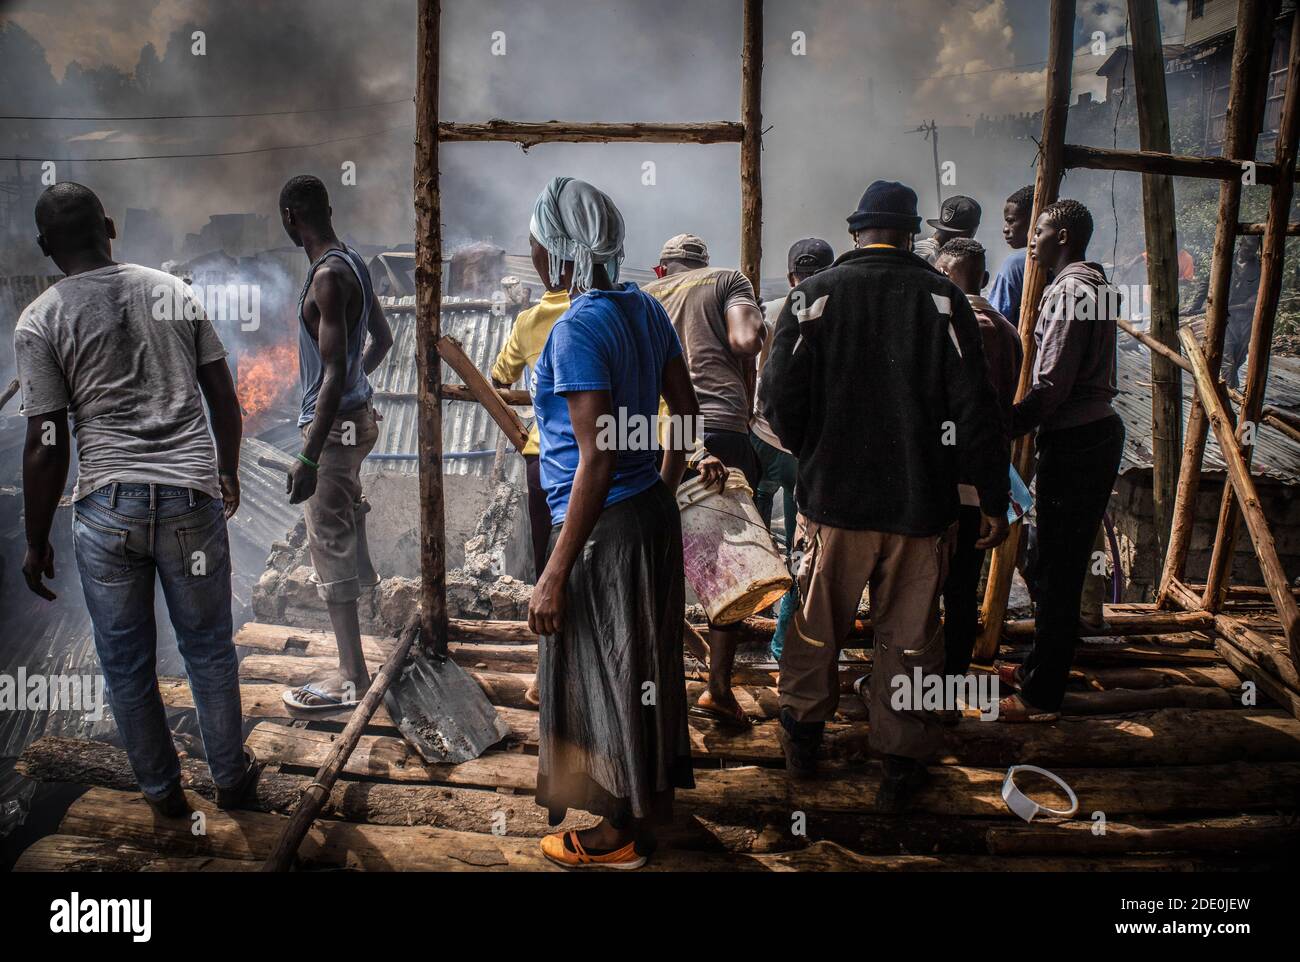 Nairobi, Kenia. Januar 2019. Bewohner aus dem Gebiet Kibera Soweto werden gesehen, wie sie mit ihren Wassereimern kämpfen, um das Feuer auszulöschen, das sich ausbreitet.tief im Nachbargebiet von Soweto in den Slums von Kibera, Die Bewohner erlebten einen harten verrückten Moment, nachdem eine Feuerbelagerung durch einen illegalen Stromanschluss dreißig Häuser niederschürte und die meisten Bewohner obdachlos wurden. Die meisten Einheimischen schlossen sich den Händen an, um das Feuer zu löschen, aber leider konnte nichts gerettet werden, aber es gab keine Menschenleben in der Situation. Kredit: Donwilson Odhiambo/SOPA Images/ZUMA Wire/Alamy Live Nachrichten Stockfoto